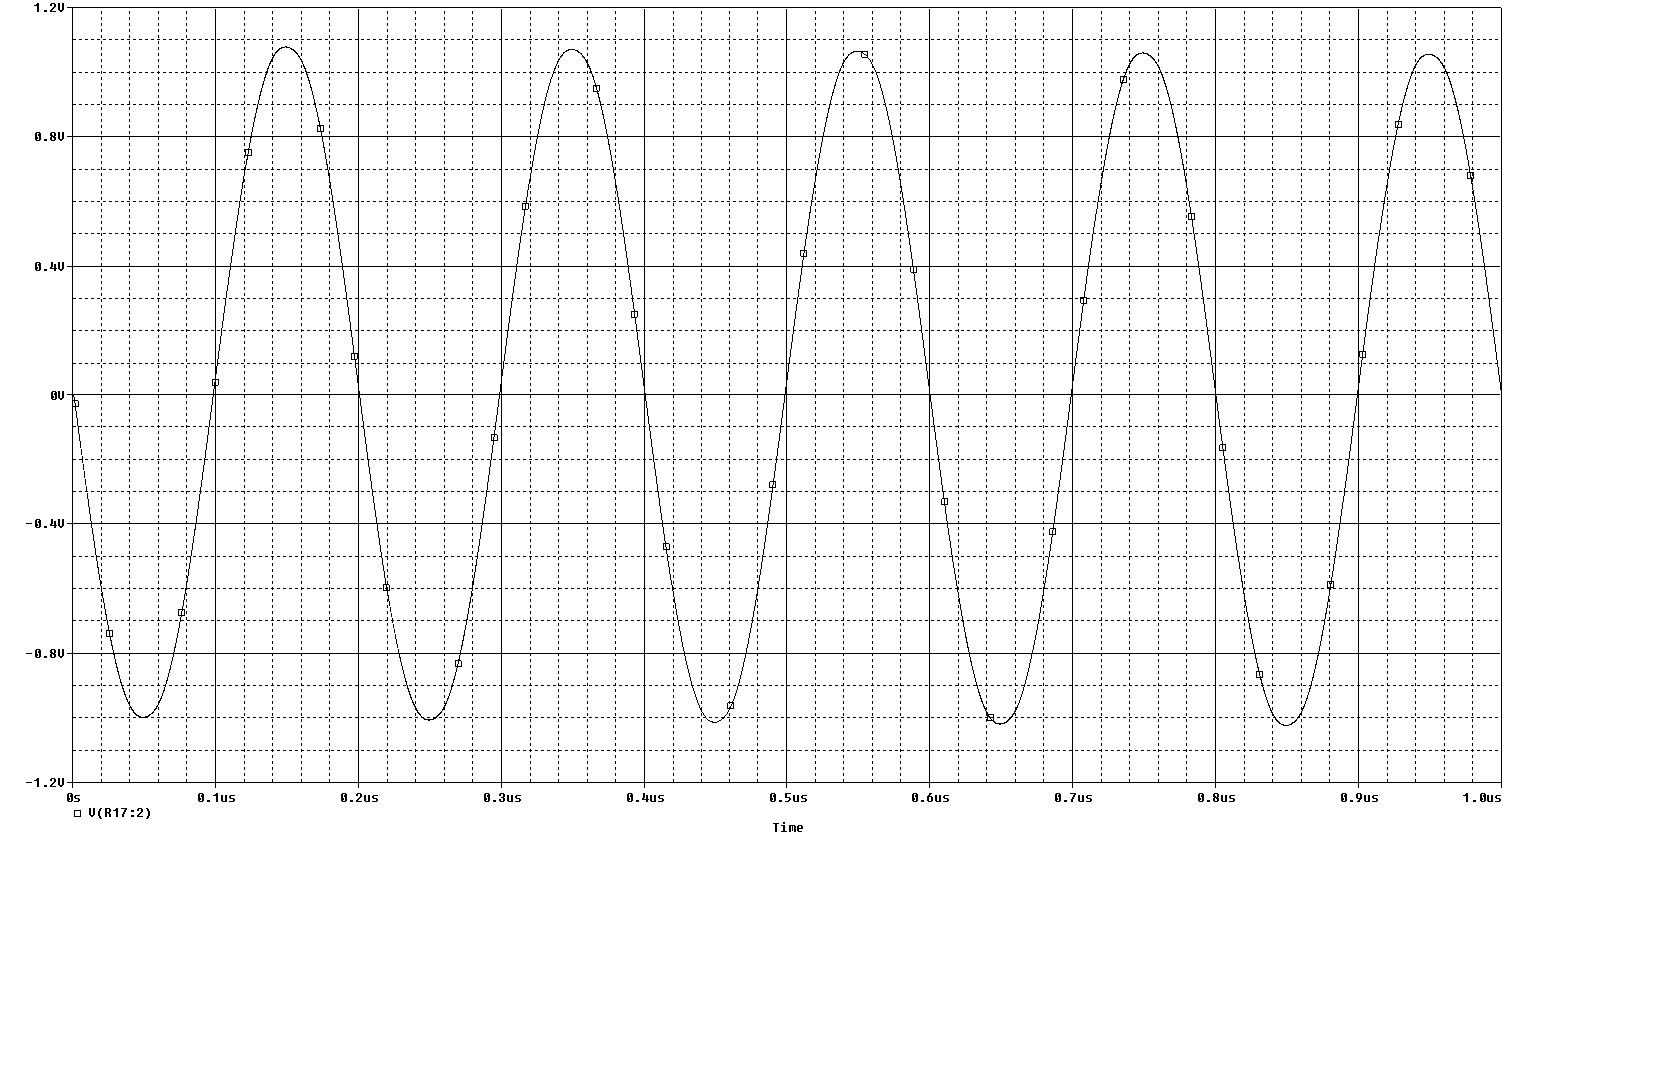 Isolation_Amplifier_V1_Waveforms.jpg